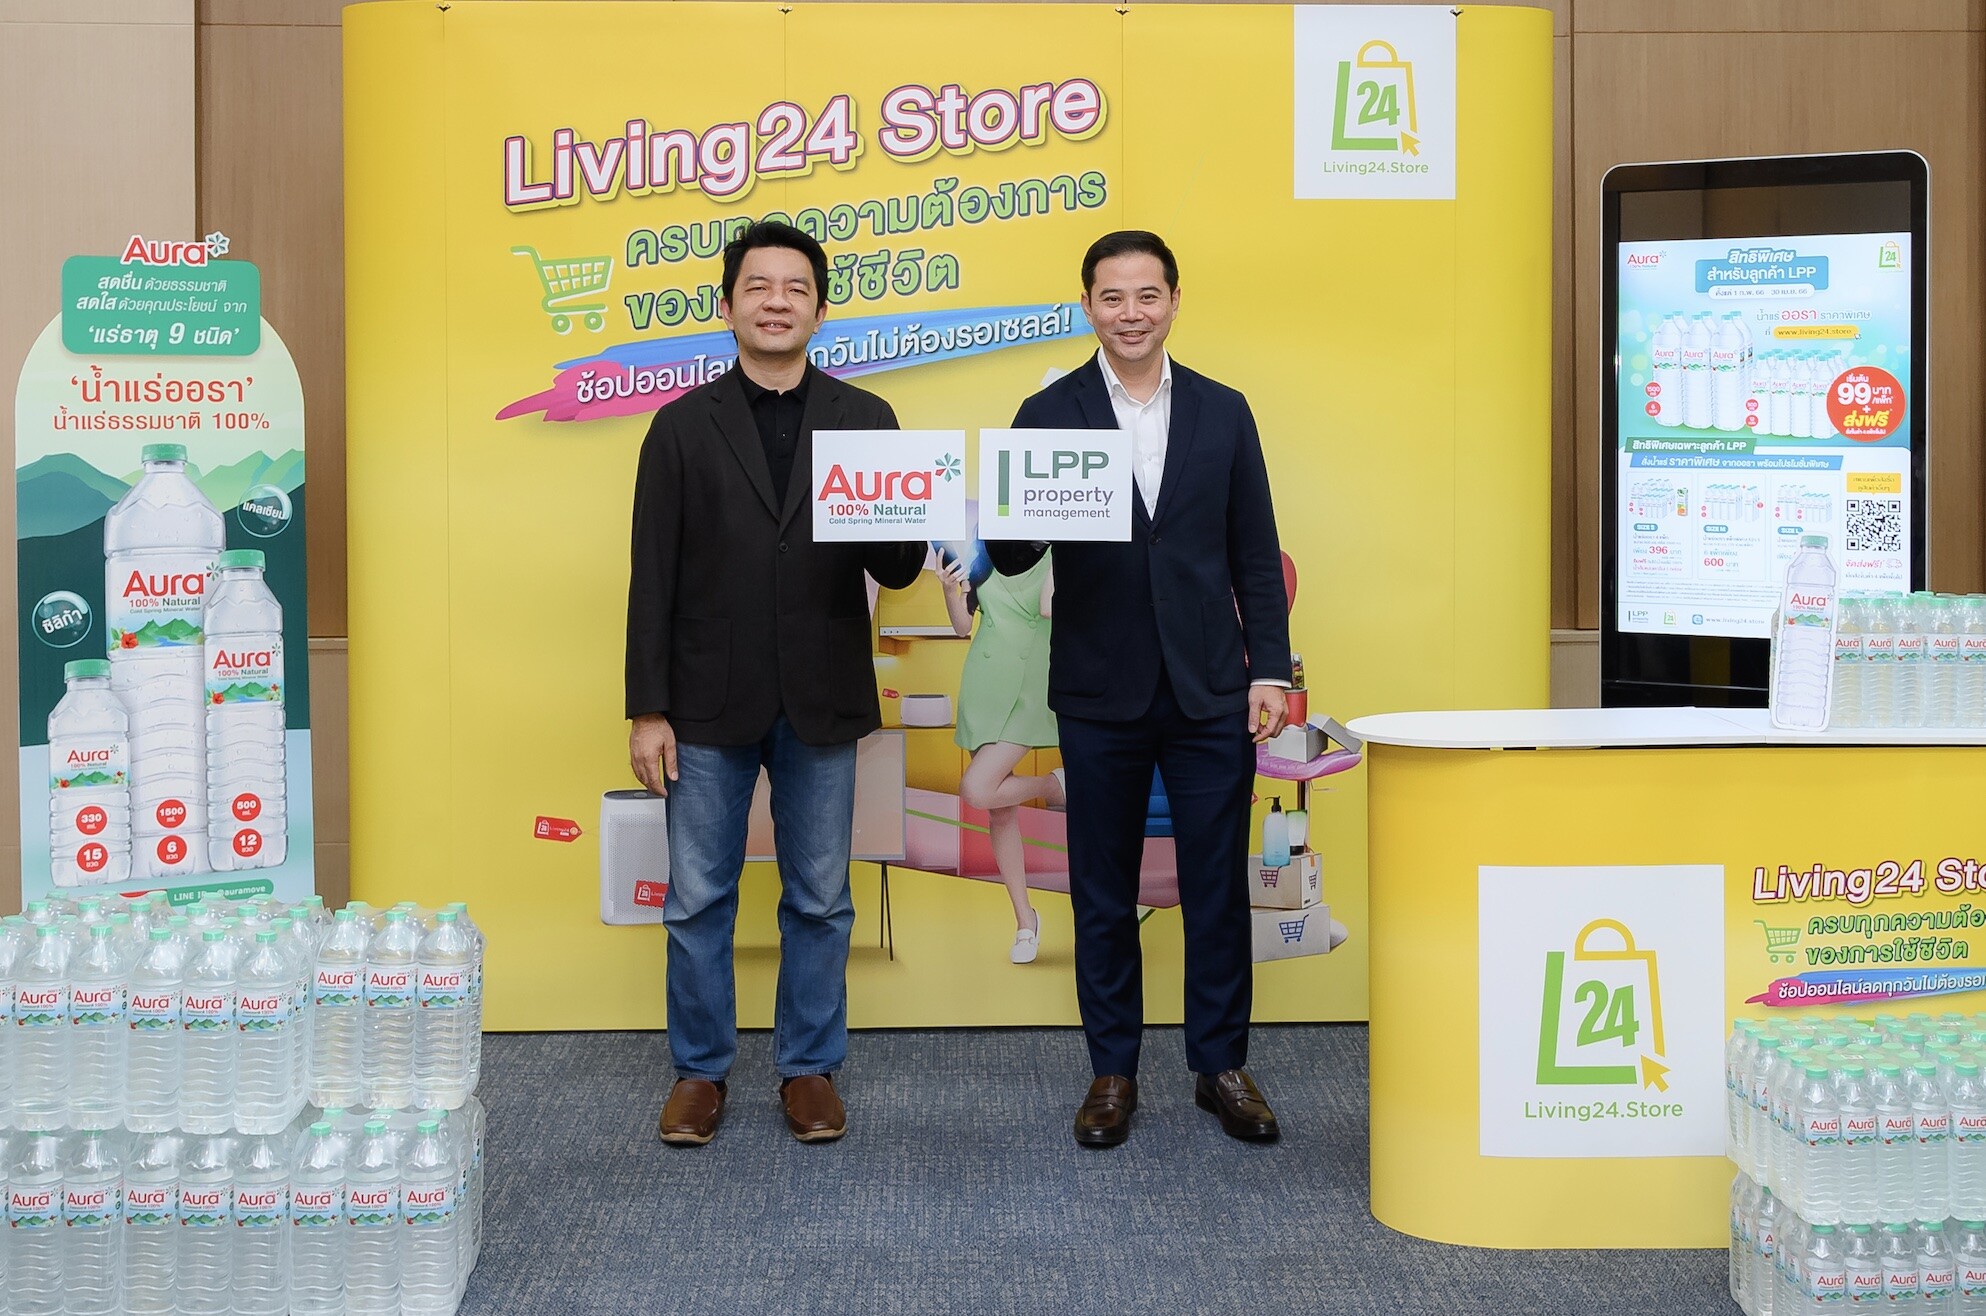 ทิปโก้ ส่ง "น้ำแร่ Aura" รุกตลาดออนไลน์ ขยายฐานลูกค้า จับมือ LPP ปล่อยแคมเปญสินค้าราคาพิเศษผ่าน Living24 Store สำหรับผู้พักอาศัย"